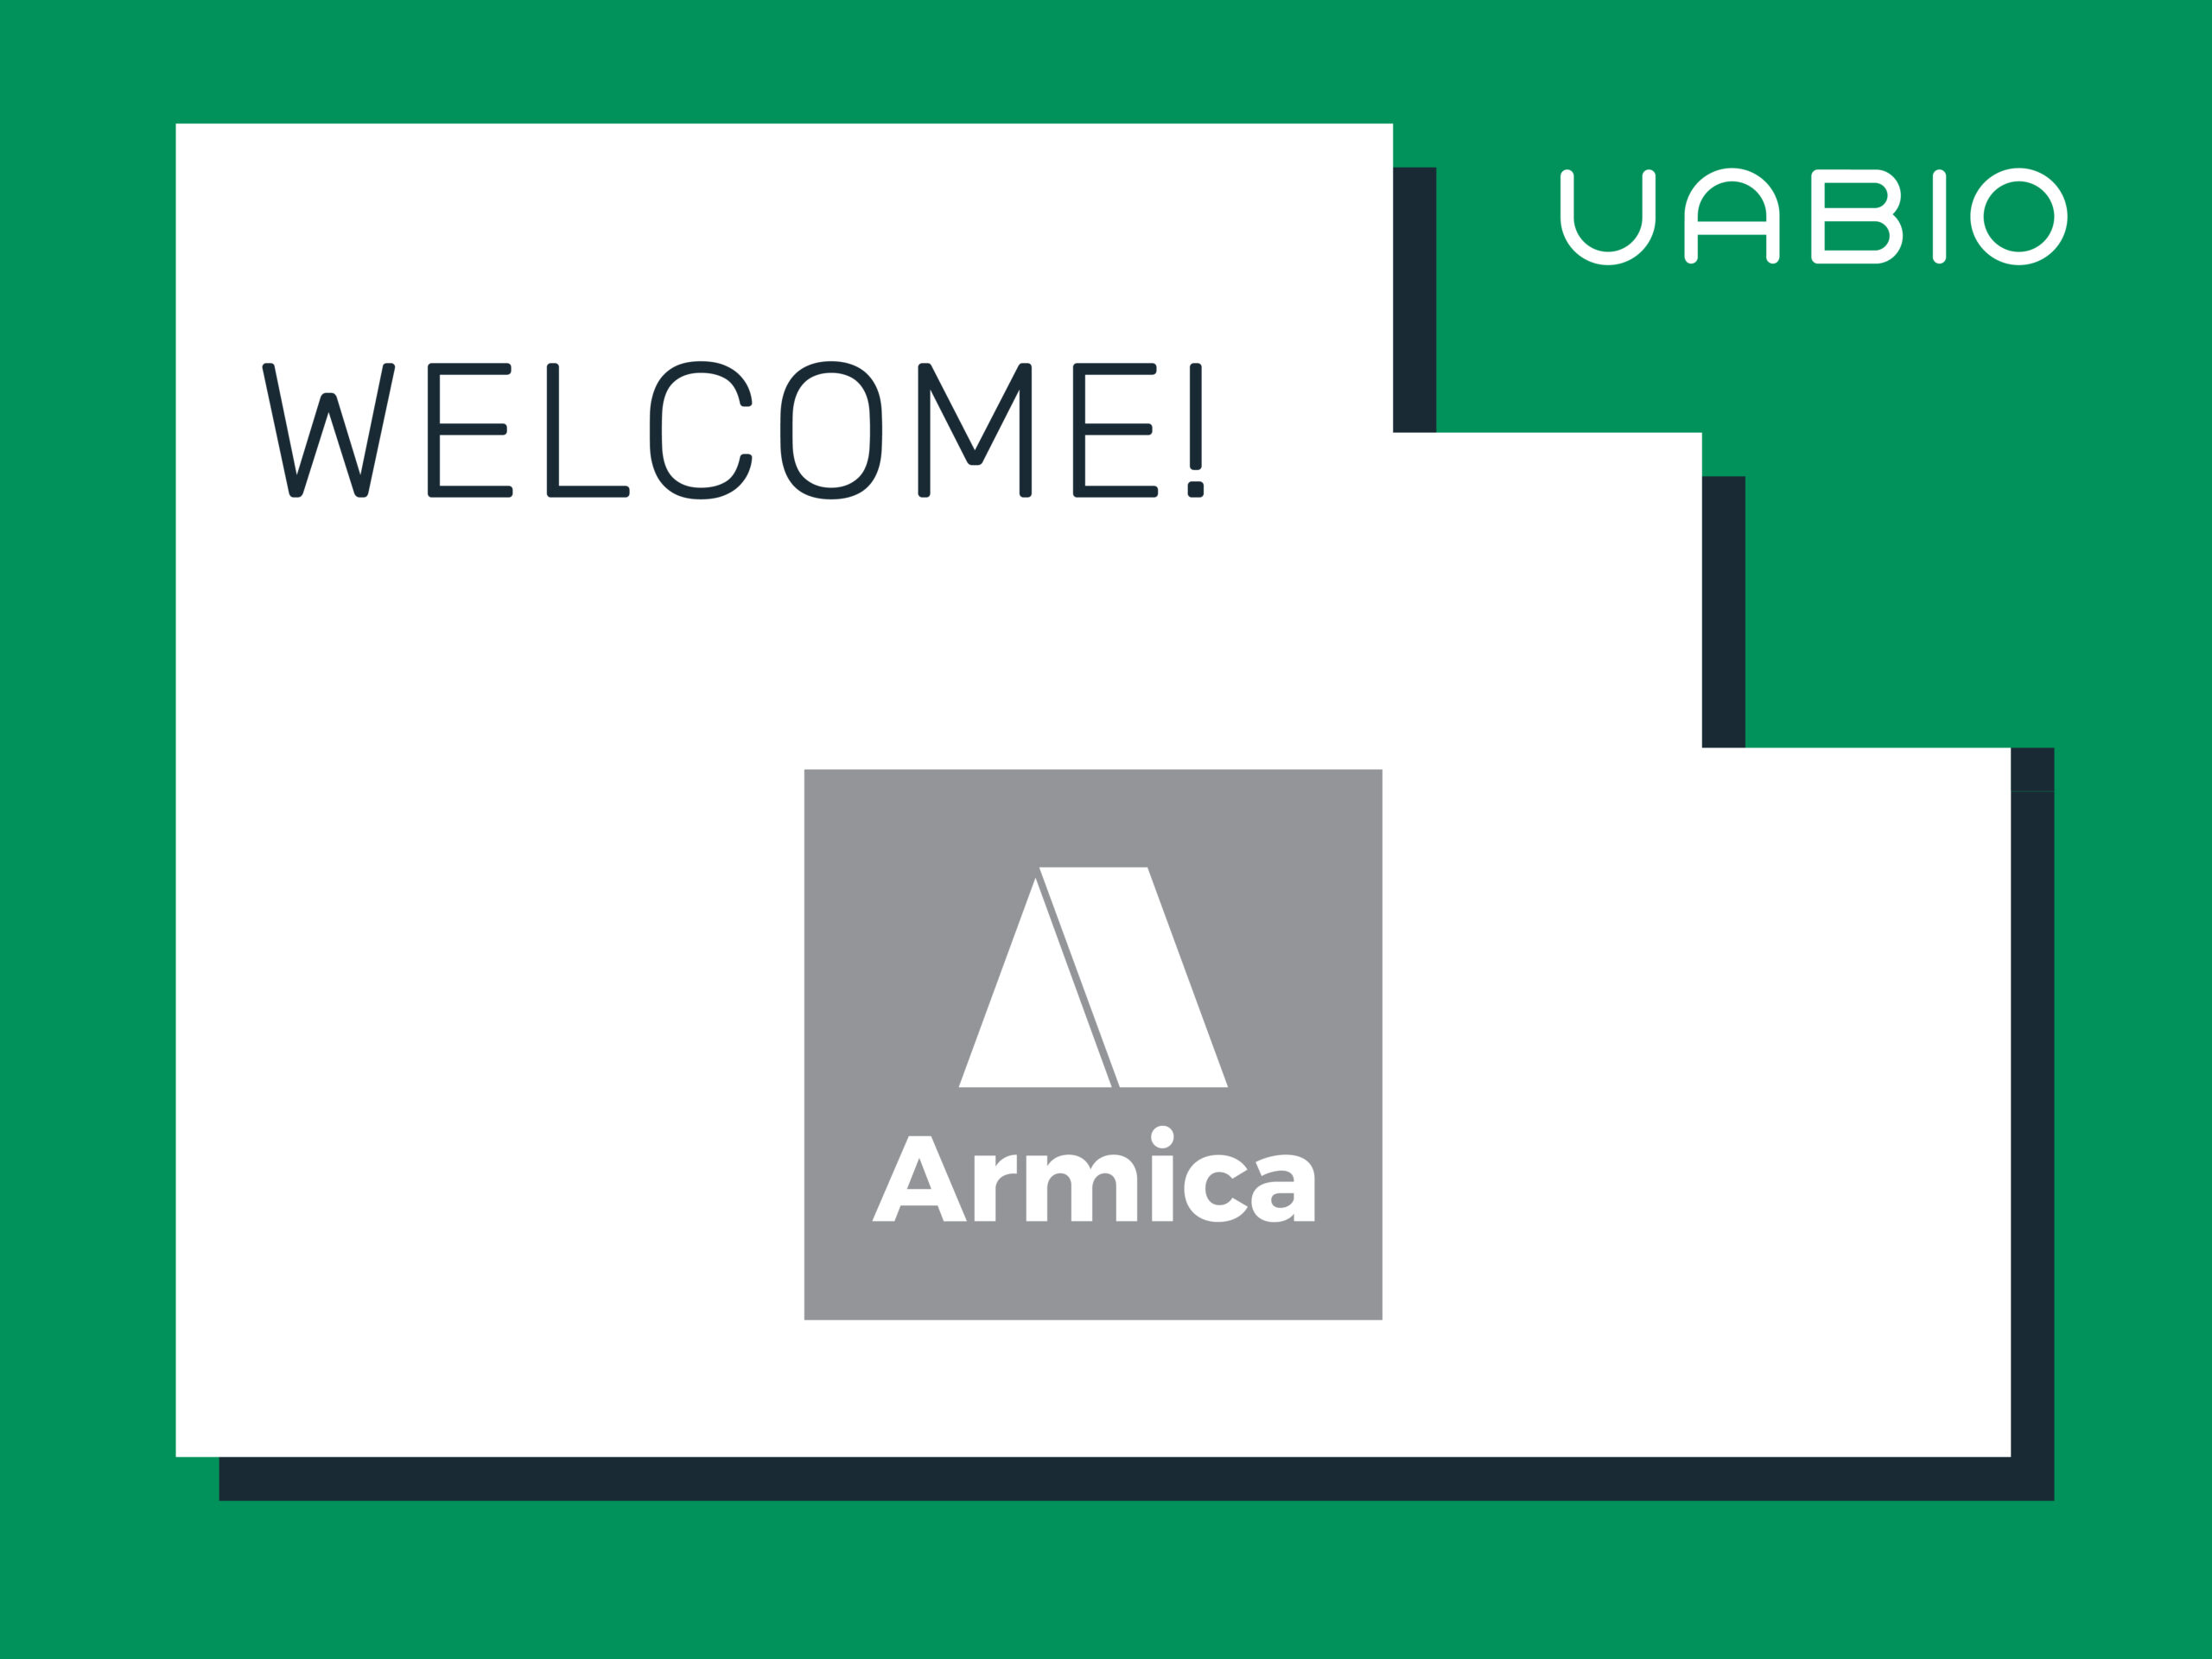 A new UABIO member Armica company